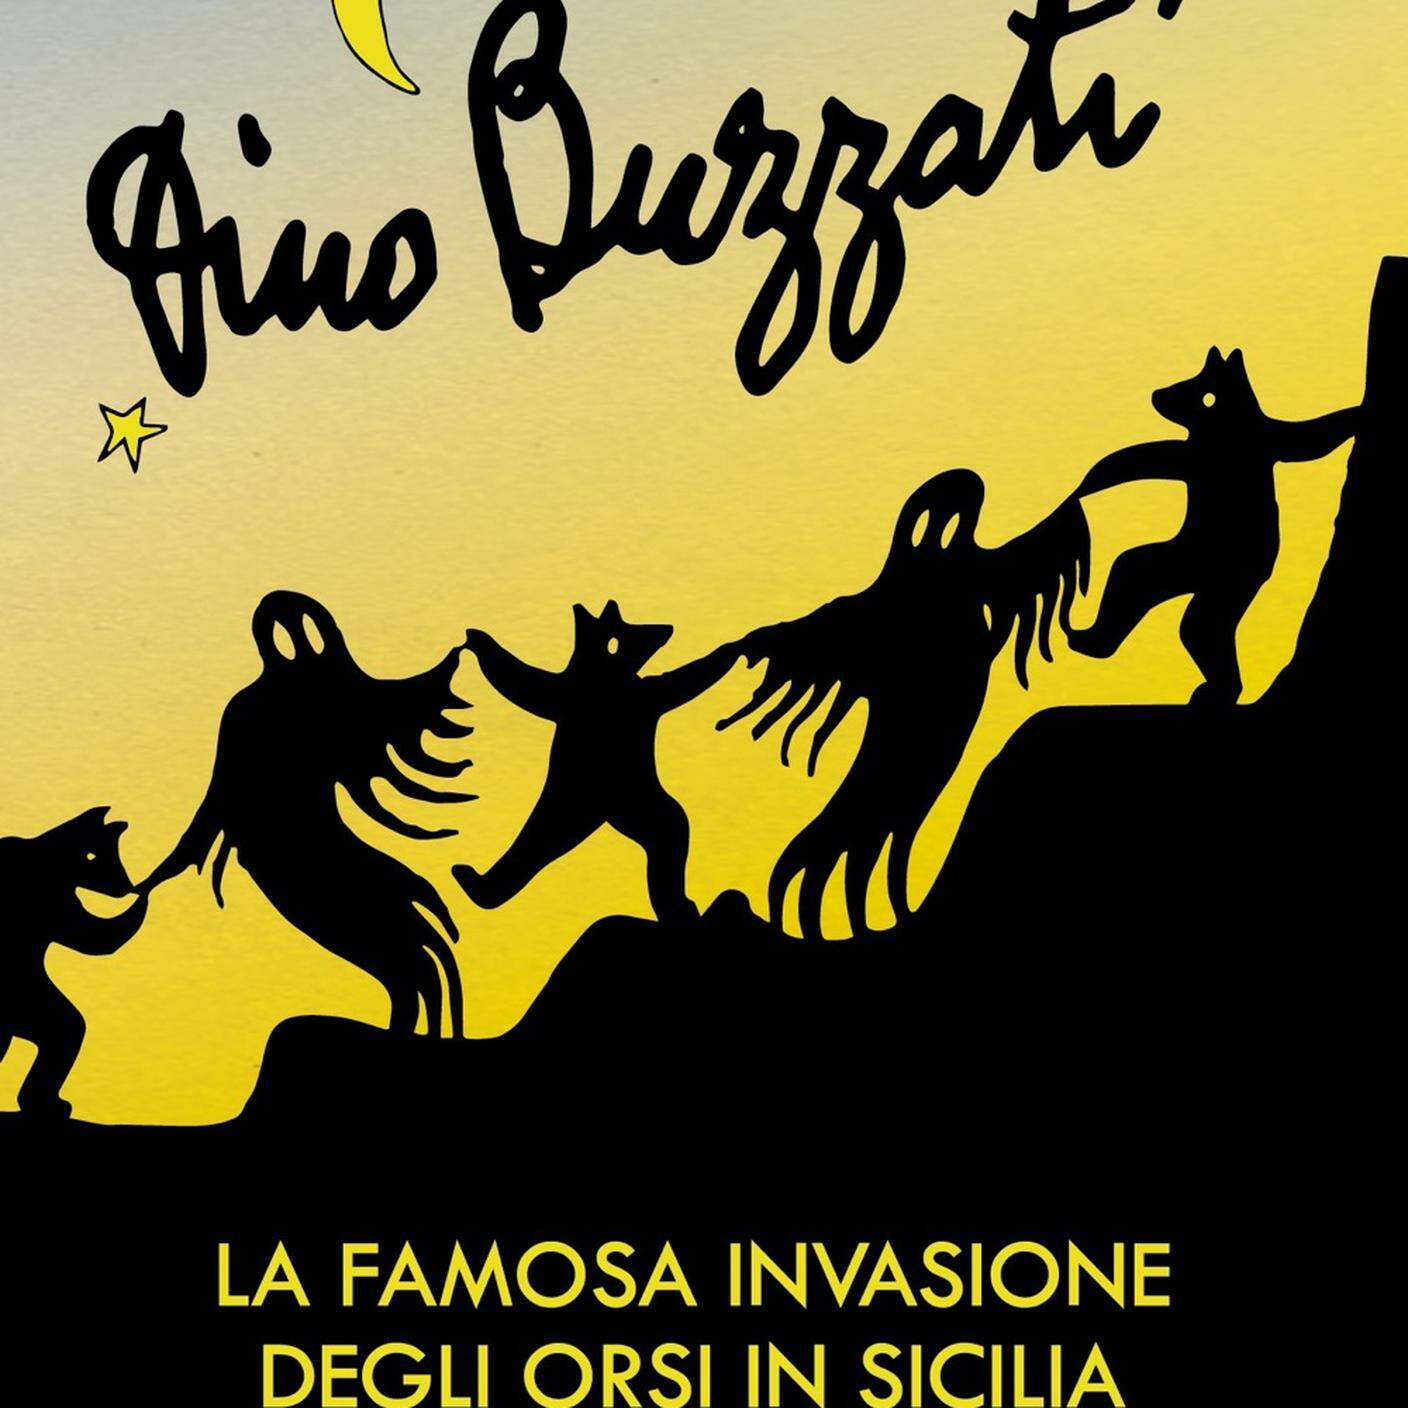 Dino Buzzati, "La famosa invasione degli orsi in Sicilia", Mondadori (dettaglio copertina)